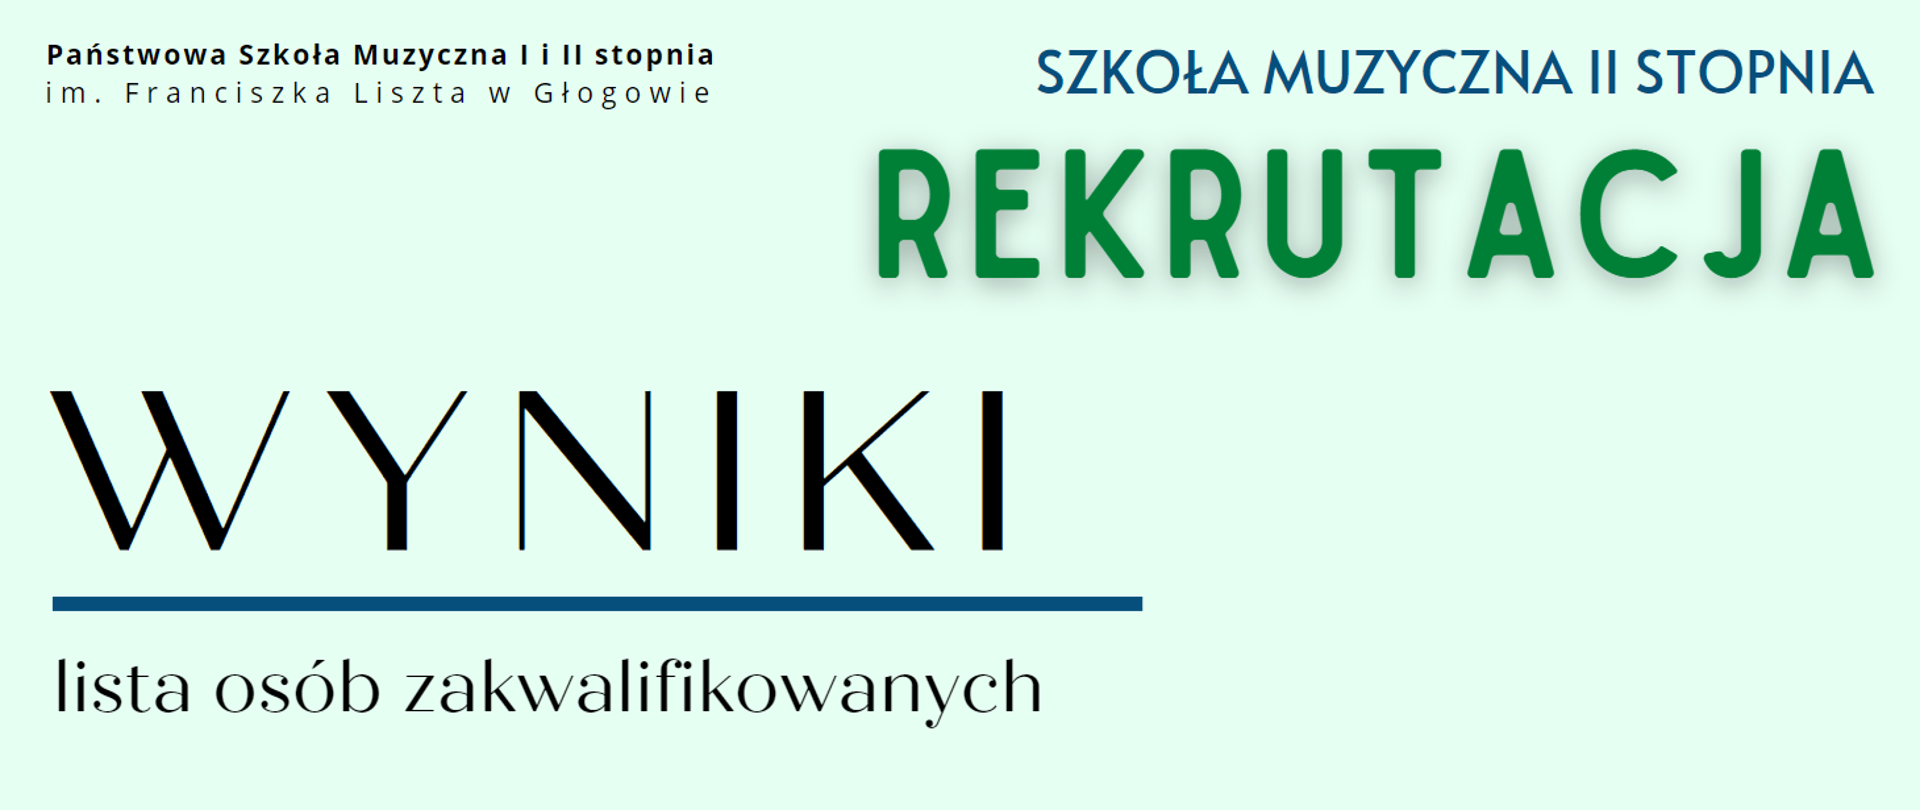 Treść napisów: "Państwowa Szkoła Muzyczna I i II stopnia im. Franciszka Liszta w Głogowie" - napis w kolorze czarnym ułożony w dwóch rzędach w lewym górnym rogu, "SZKOŁA MUZYCZNA II STOPNIA" w kolorze ciemnoniebieskim w prawym górnym rogu, poniżej "REKRUTACJA" - litery zielone, większa czcionka, "WYNIKI" - w lewej dolnej części, litery w kolorze czarnym, słowo wyróżnione dużą czcionką i podkreśleniem (pozioma linia w kolorze ciemnoniebieskim), "lista osób zakwalifikowanych" - poniżej, litery czarne.. Tło jasne. 